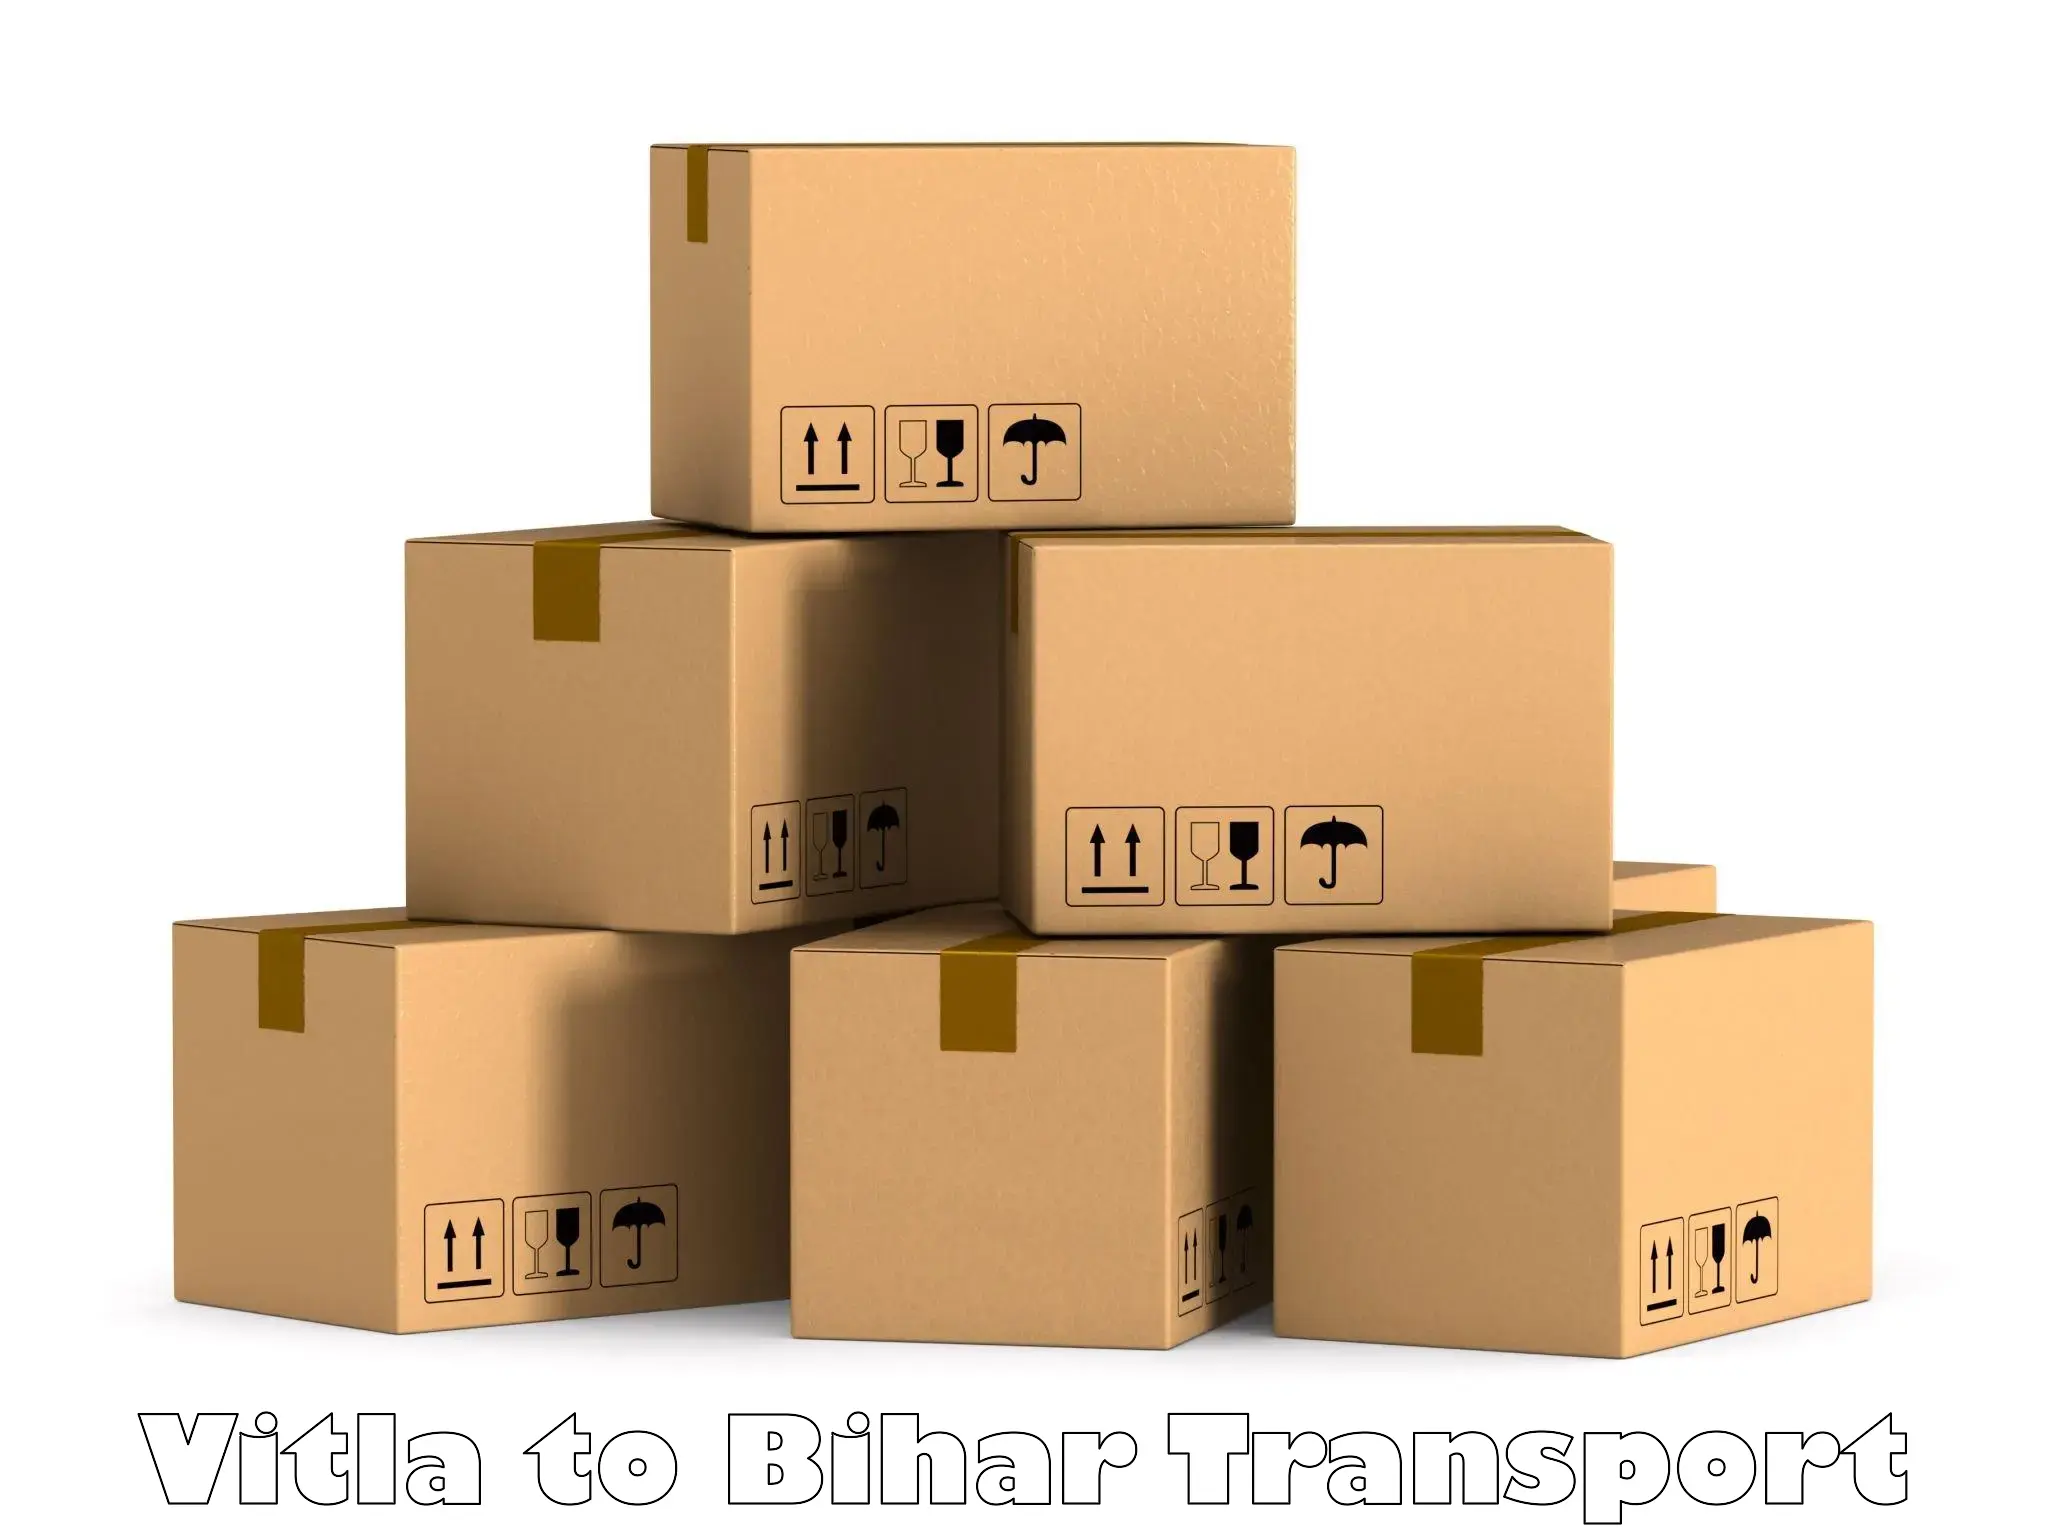 International cargo transportation services in Vitla to Jalalgarh